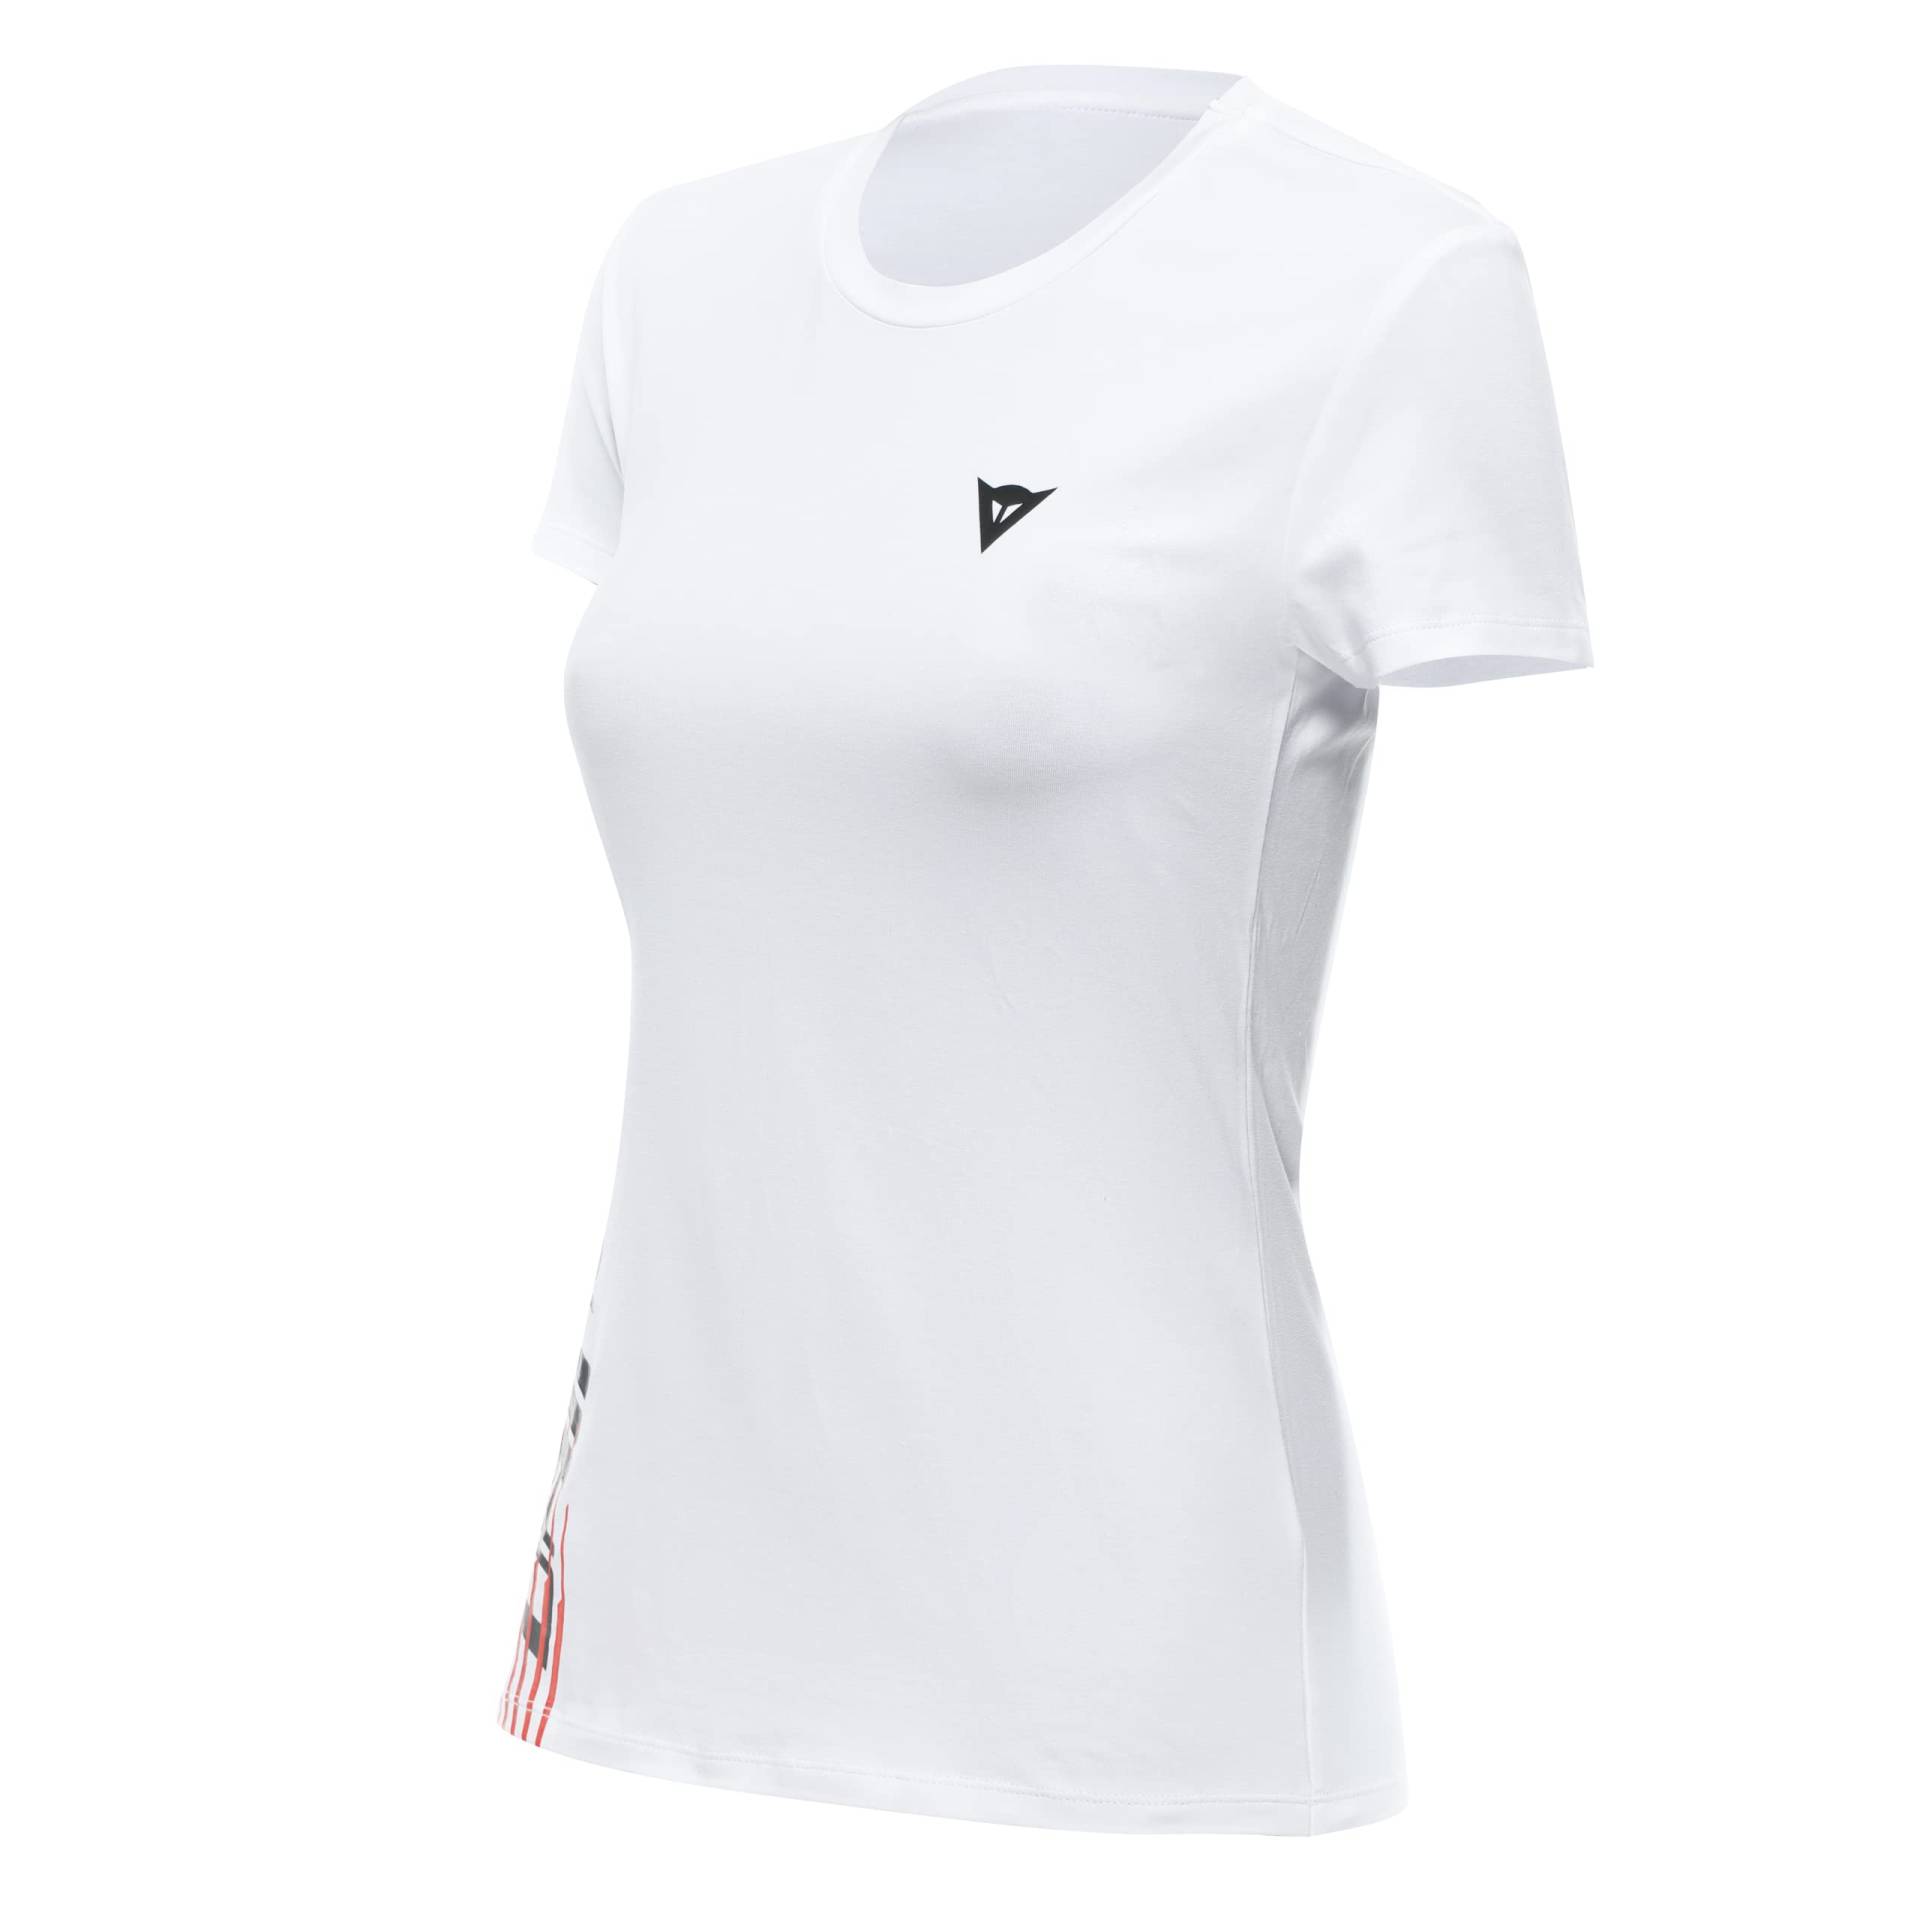 Dainese T-Shirt Logo Lady, T-Shirt Kurzarm 100% Baumwolle, Damen, Weiß/Schwarz, L von Dainese